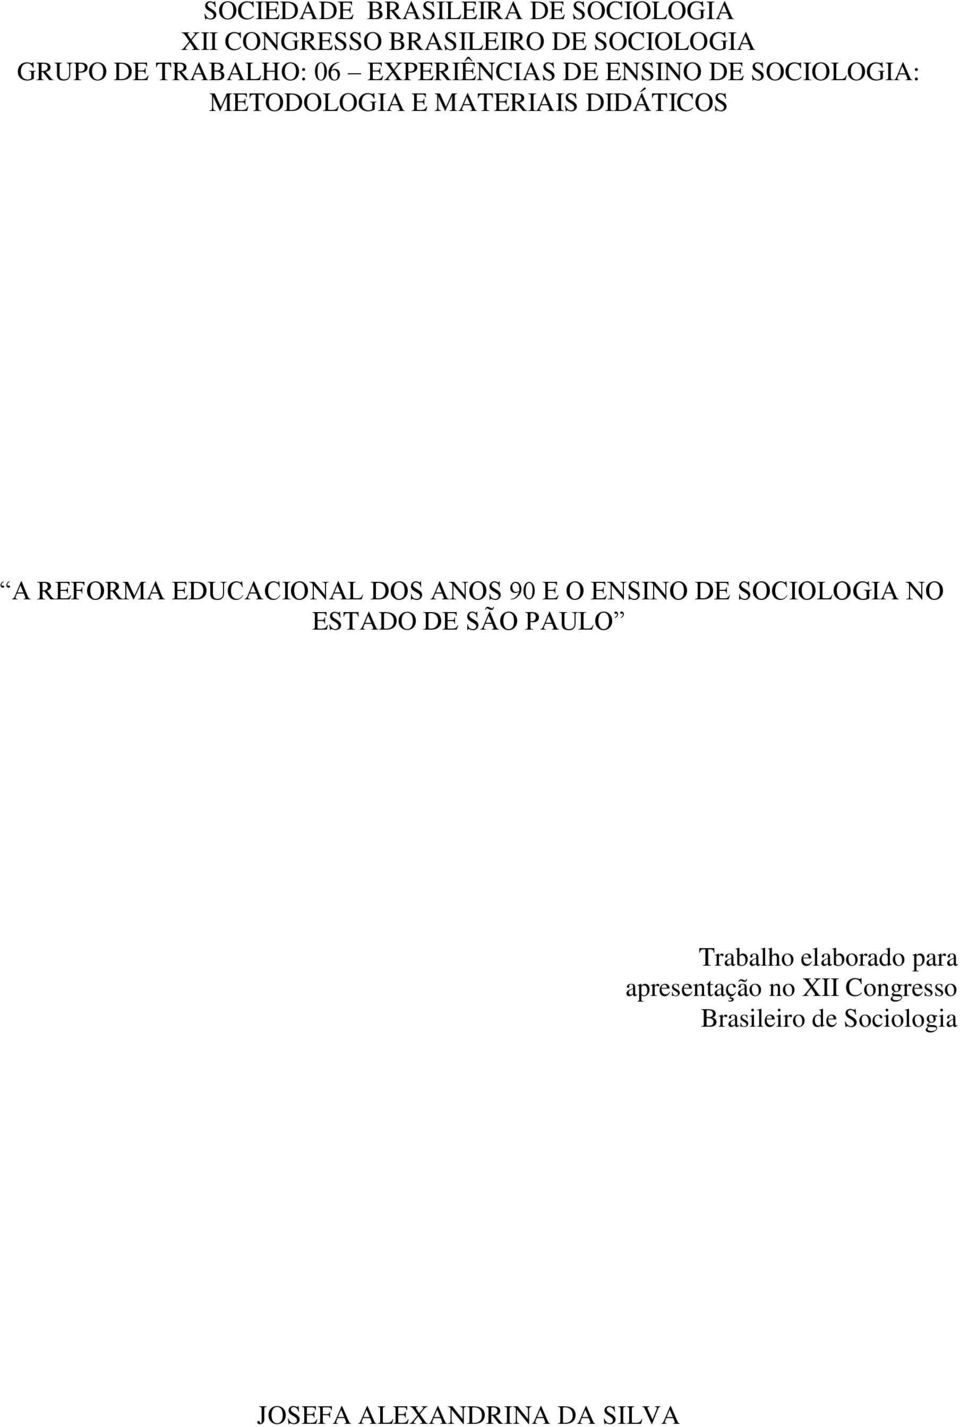 REFORMA EDUCACIONAL DOS ANOS 90 E O ENSINO DE SOCIOLOGIA NO ESTADO DE SÃO PAULO Trabalho